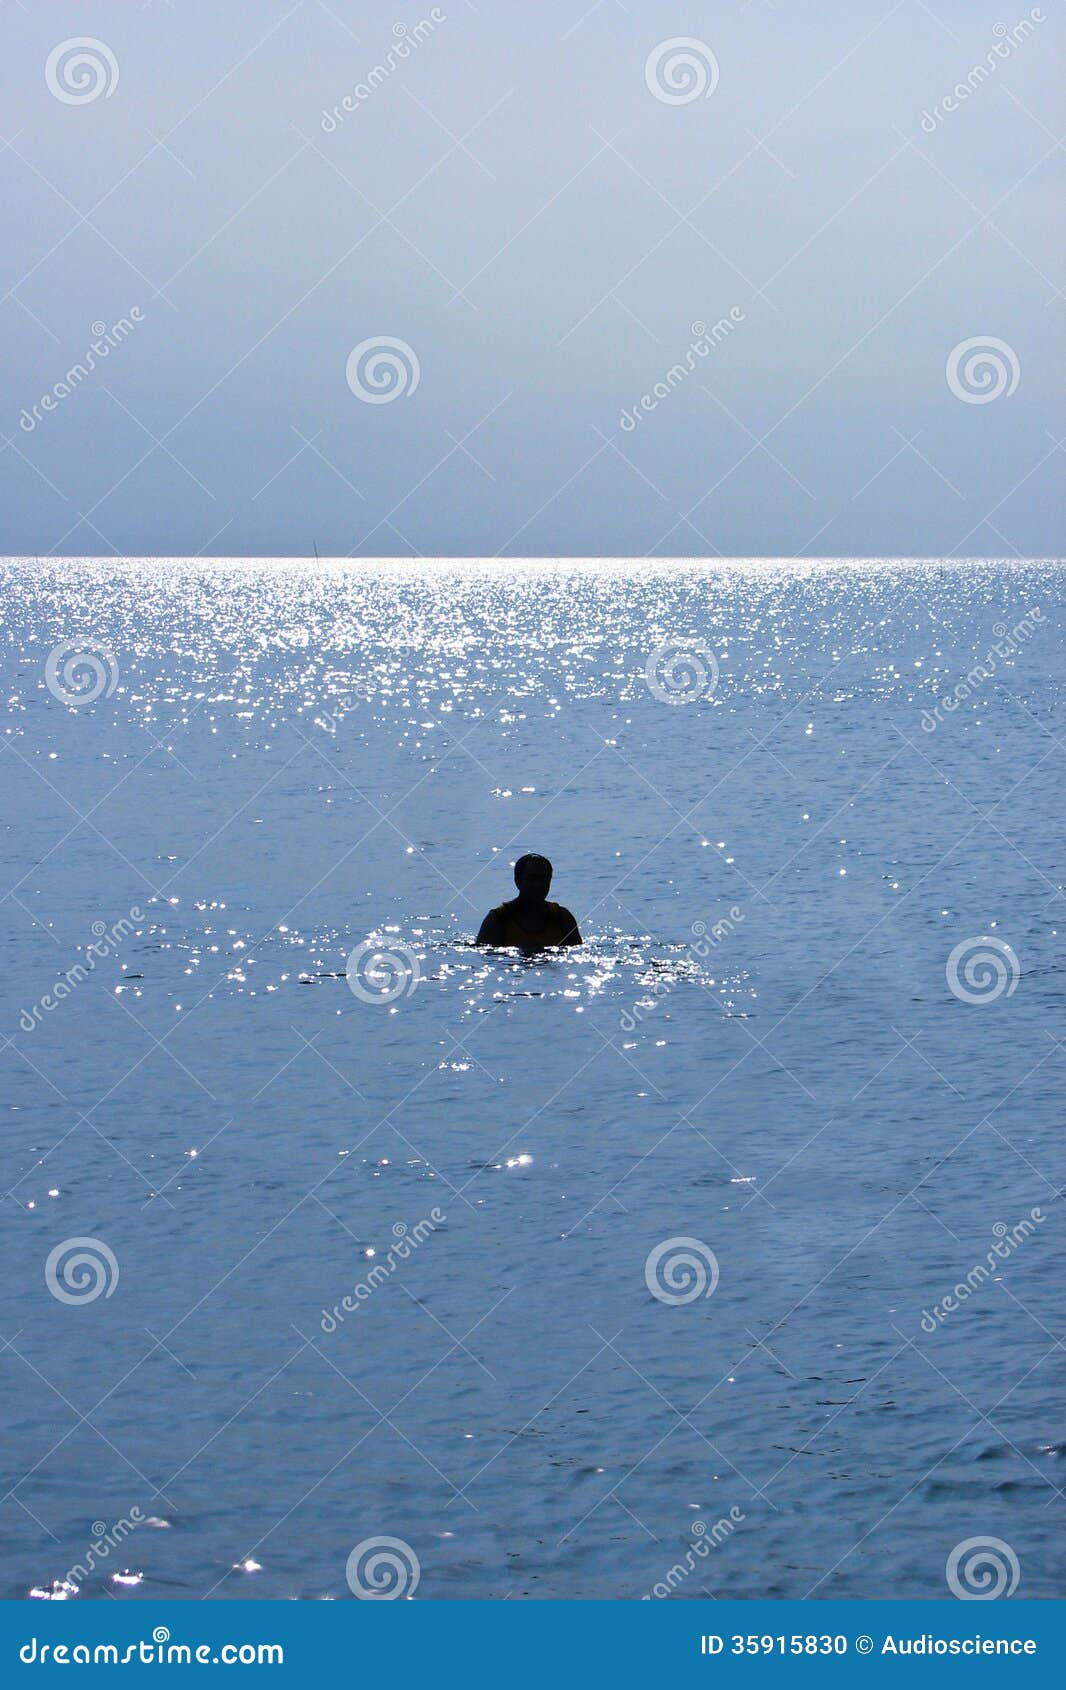 Siluetta Di Un Nuoto Dell'uomo Su Una Spiaggia Fotografia Stock ...